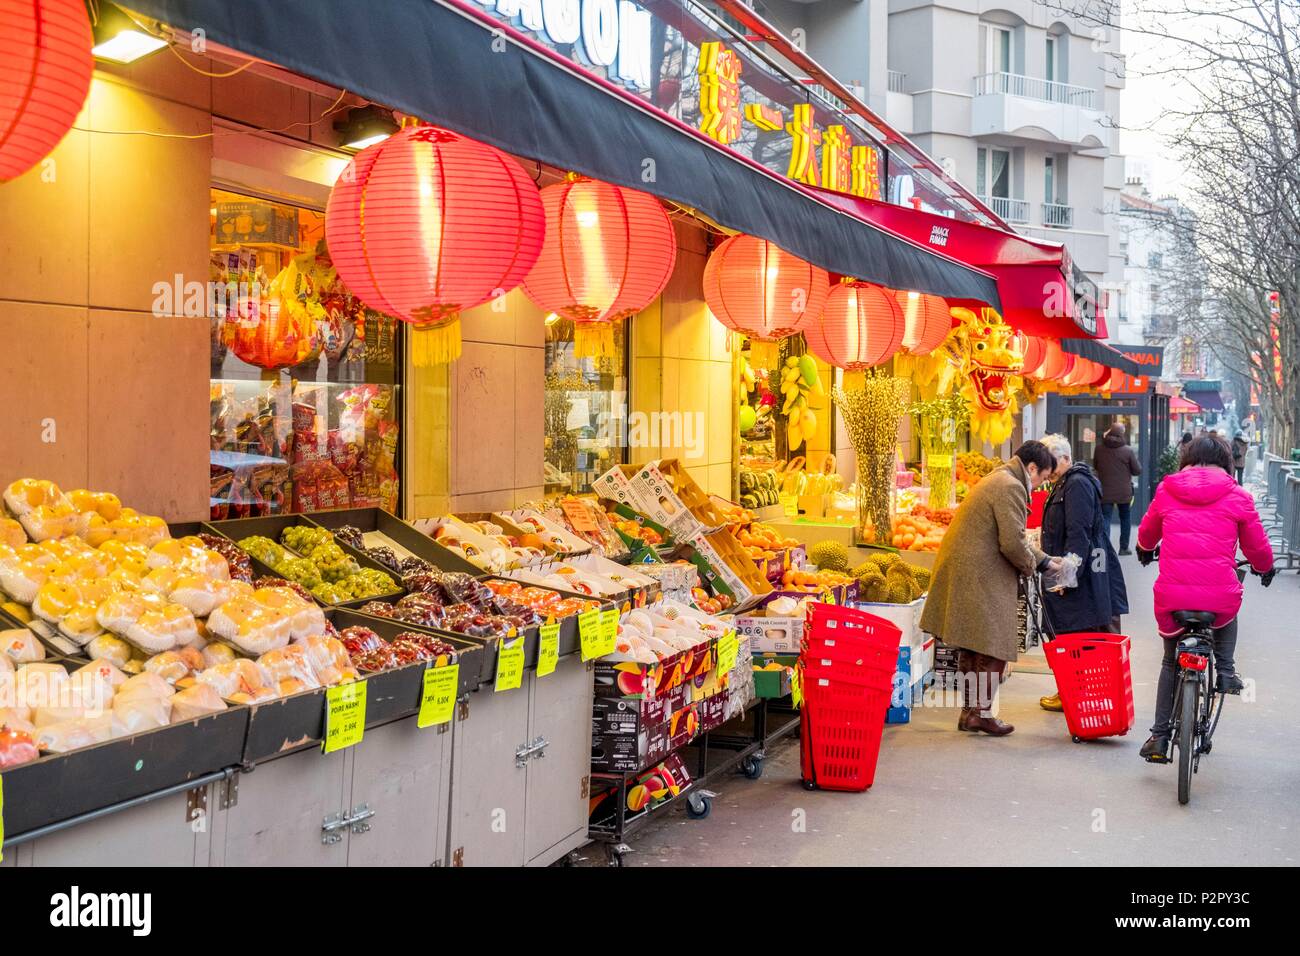 France, Paris, the Chinatown of the 13th arrondissement, Avenue de Choisy Stock Photo